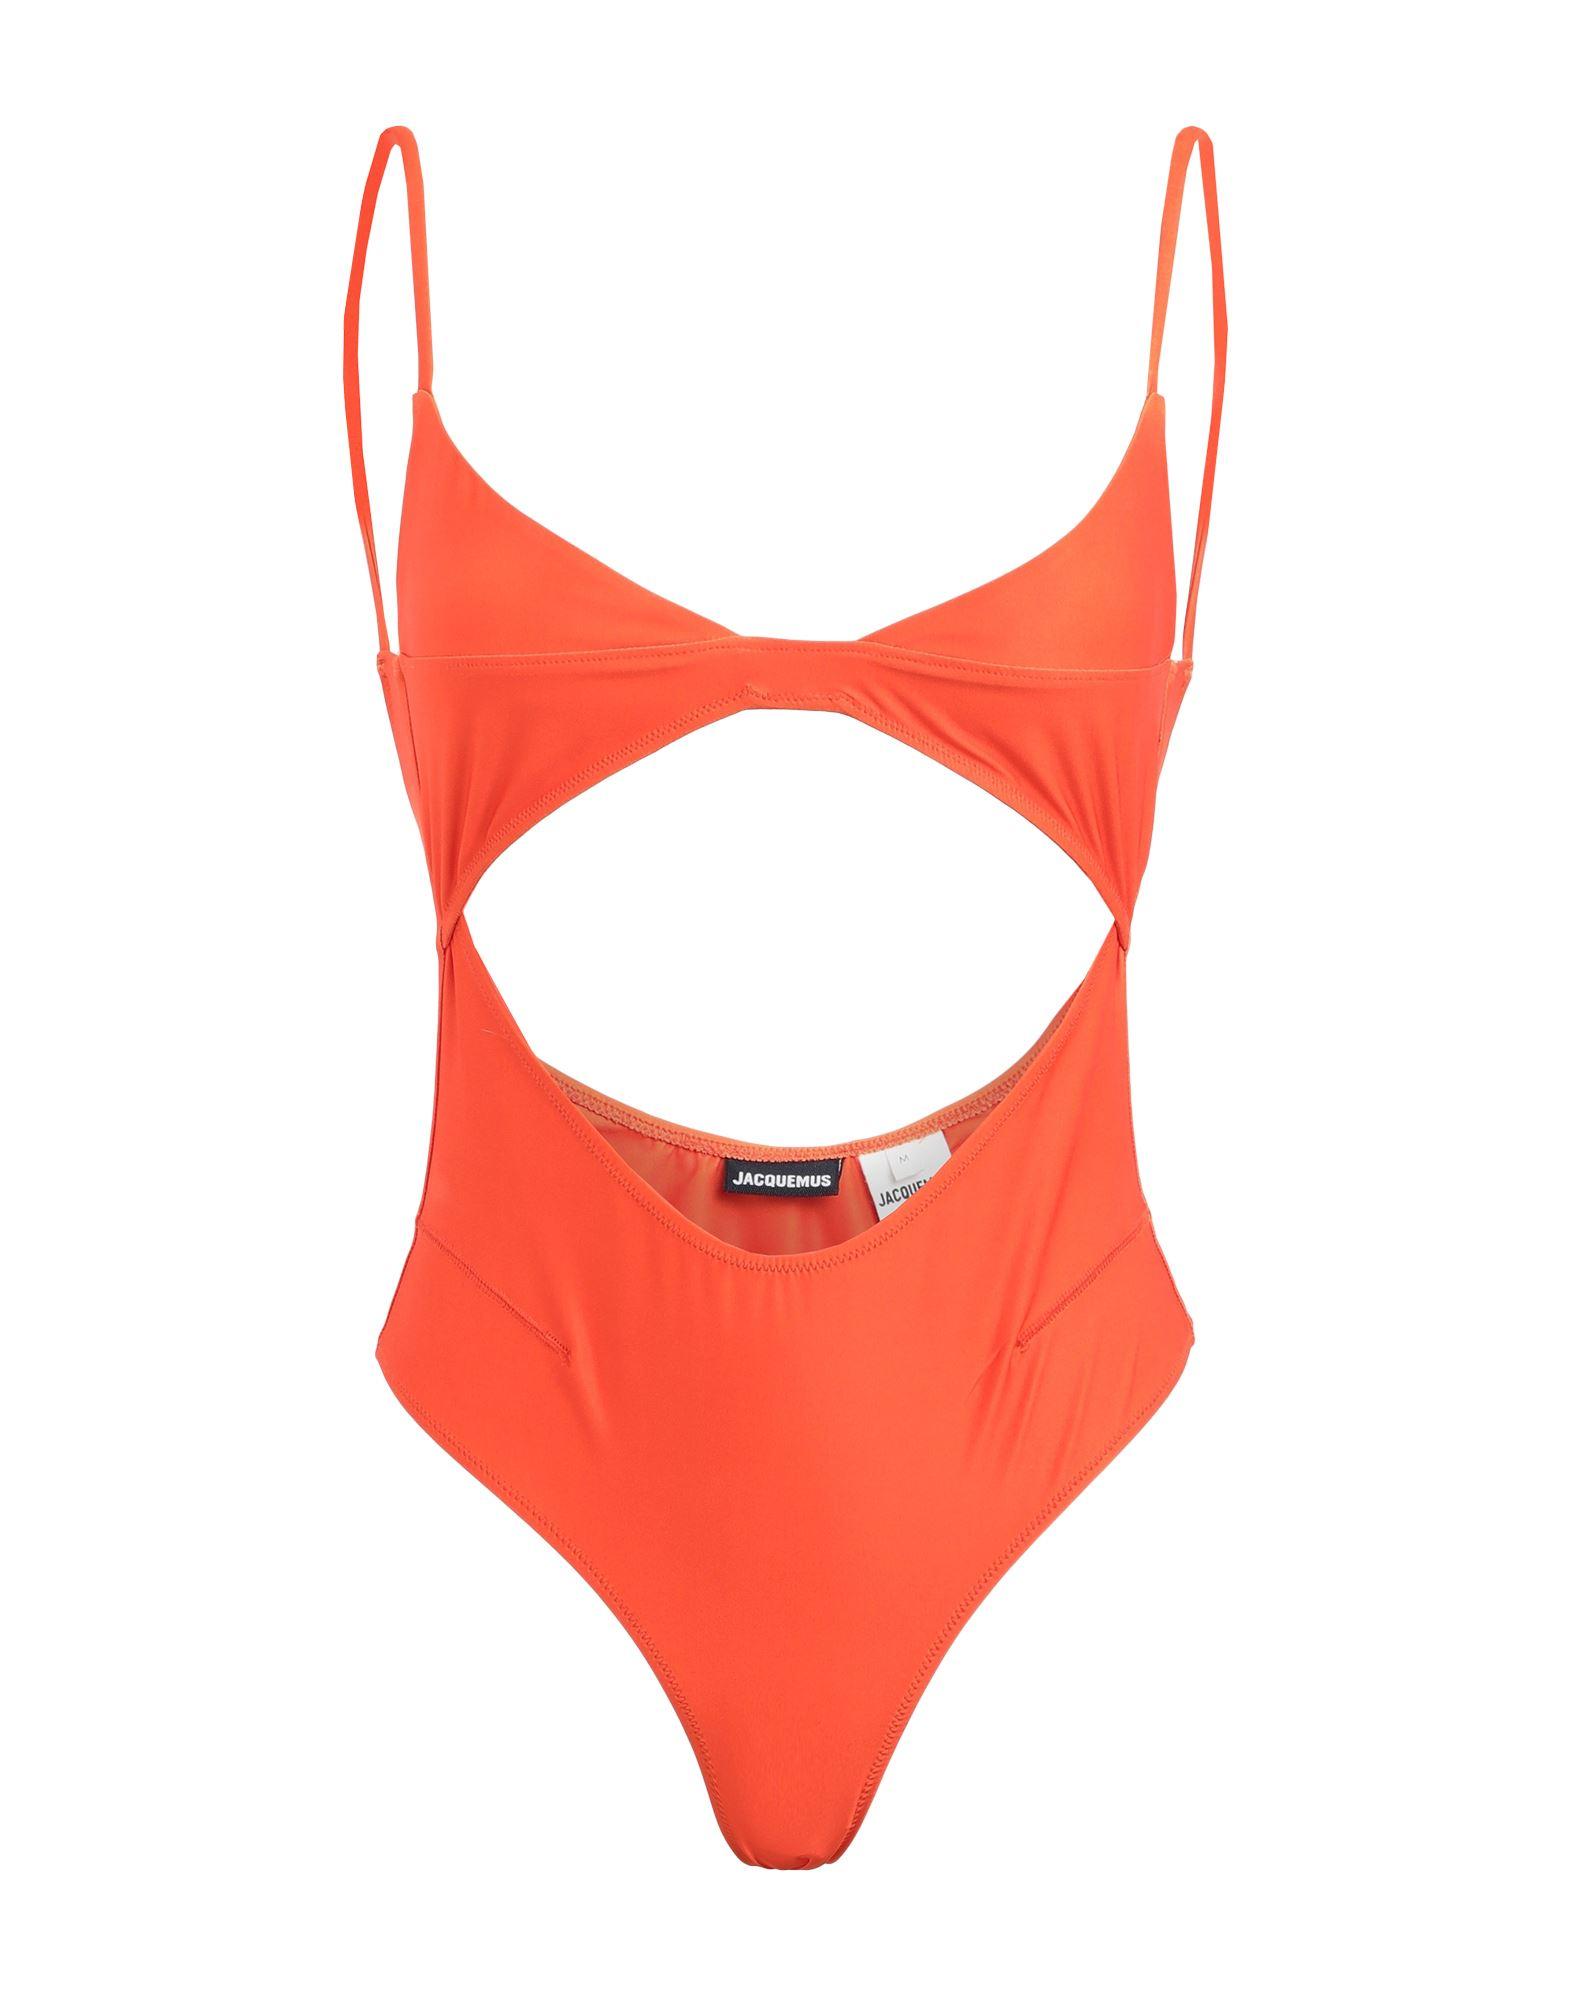 Jacquemus One-piece Swimsuit in Orange | Lyst